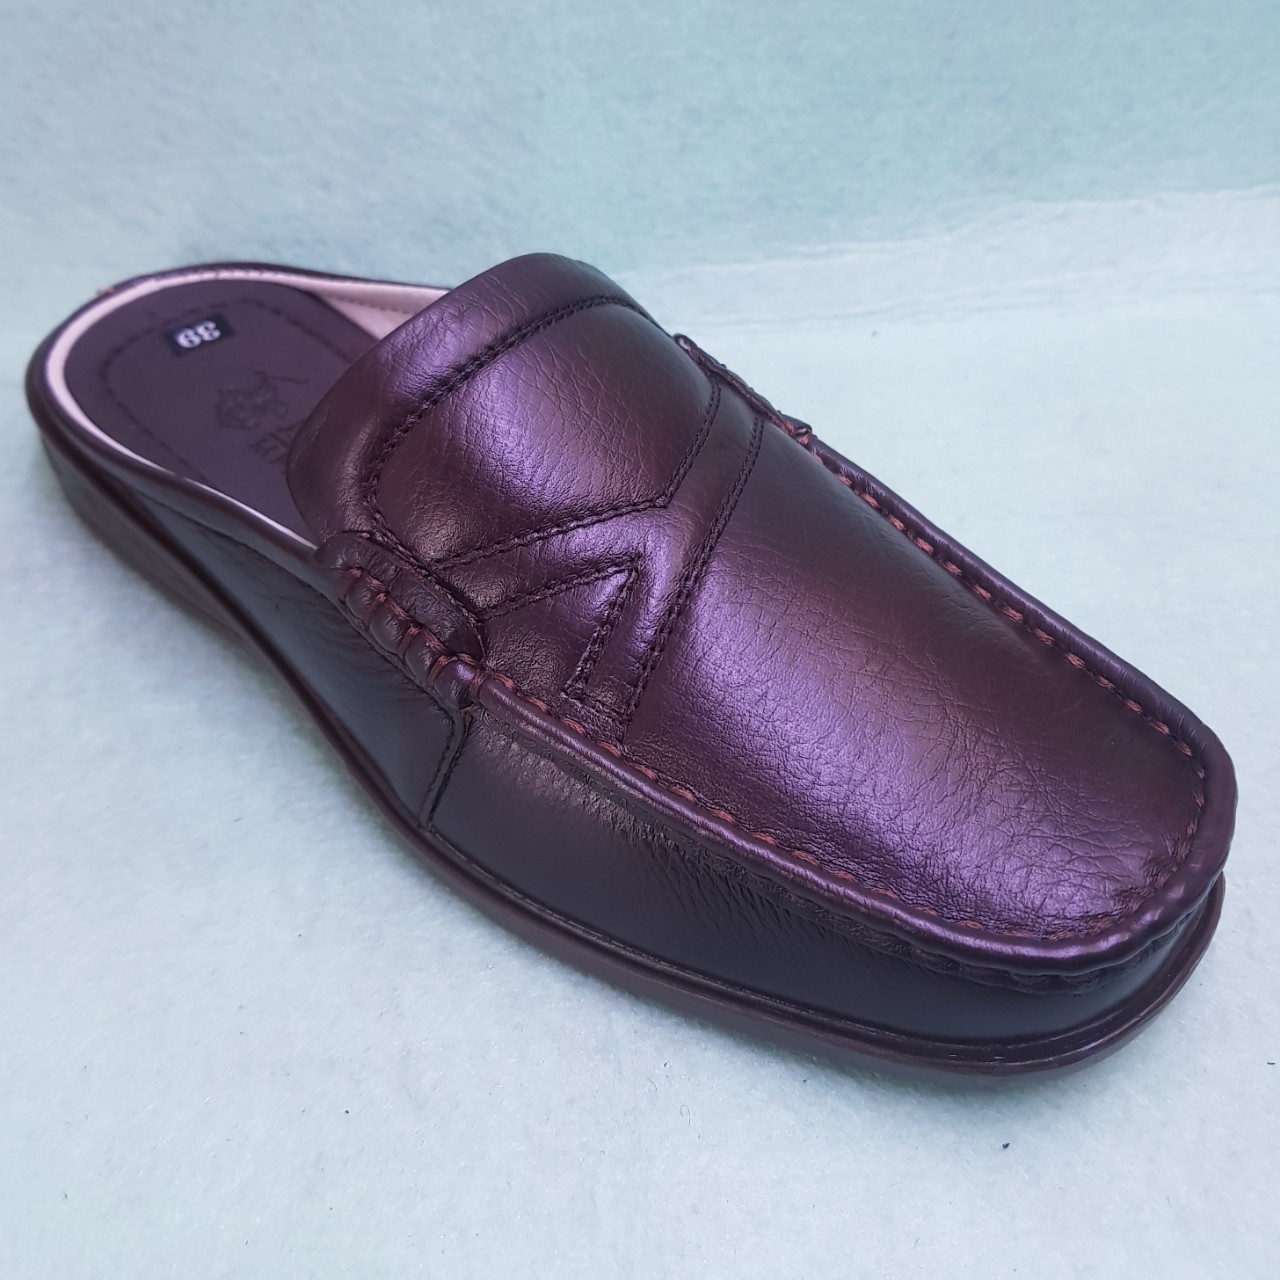 xưởng phân phối bán buôn bỏ sỉ giày sabo nam da bò 100%, giá sỉ tận gốc, bán sỉ cho đại lý giày dép và khách sỉ toàn quốc